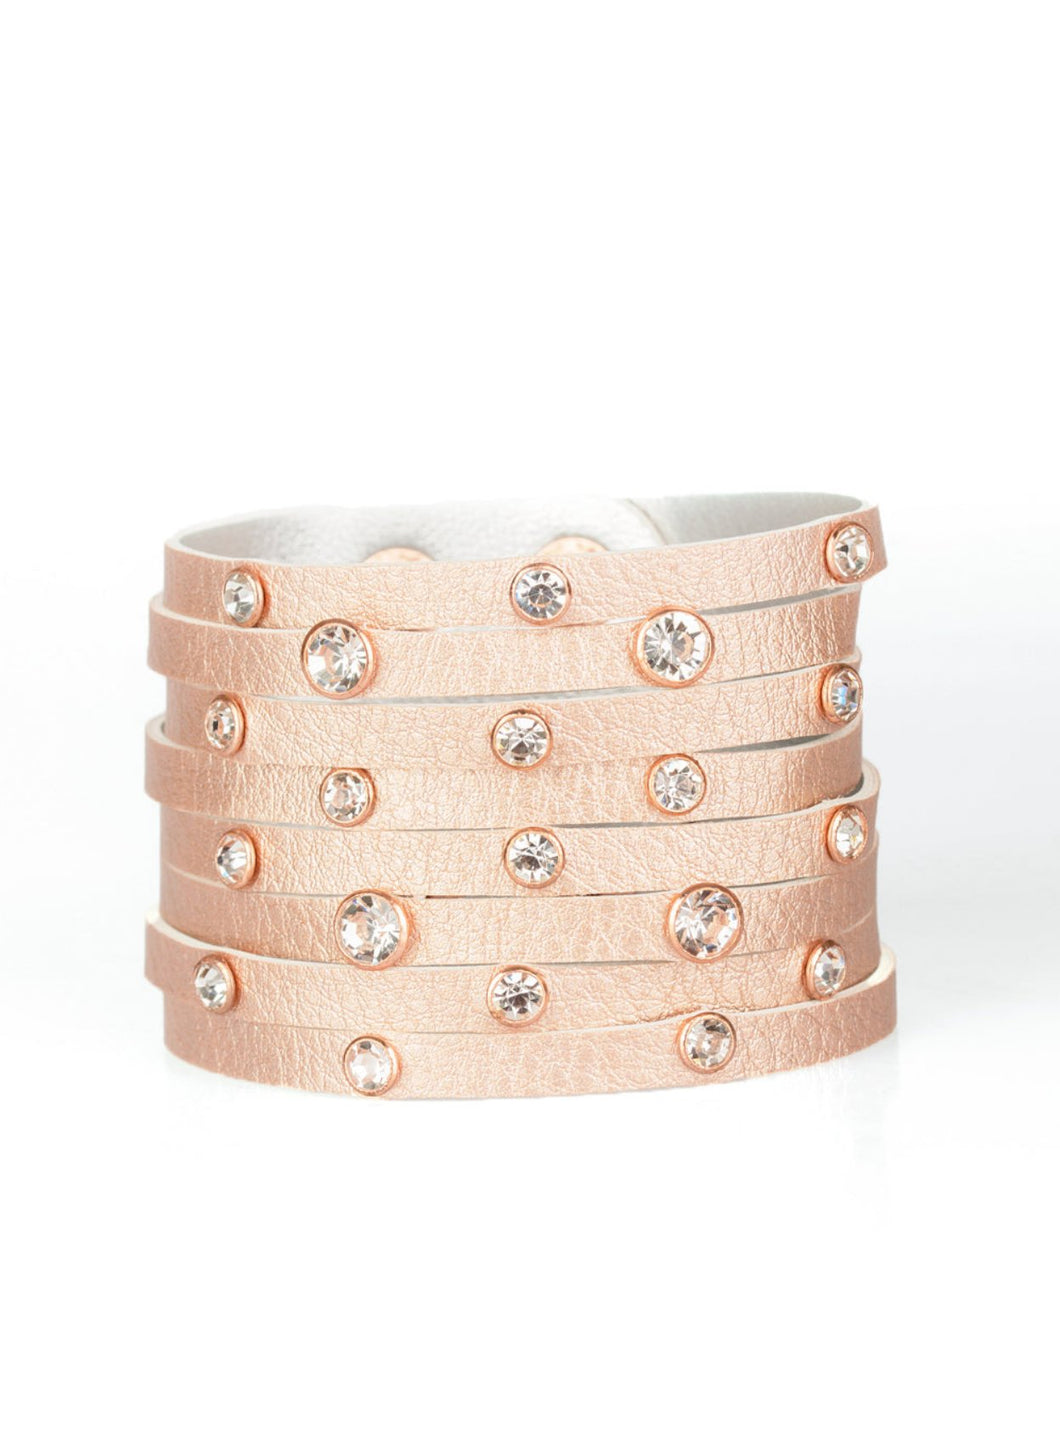 Go-Getter Glamorous Copper Urban Wrap Bracelet